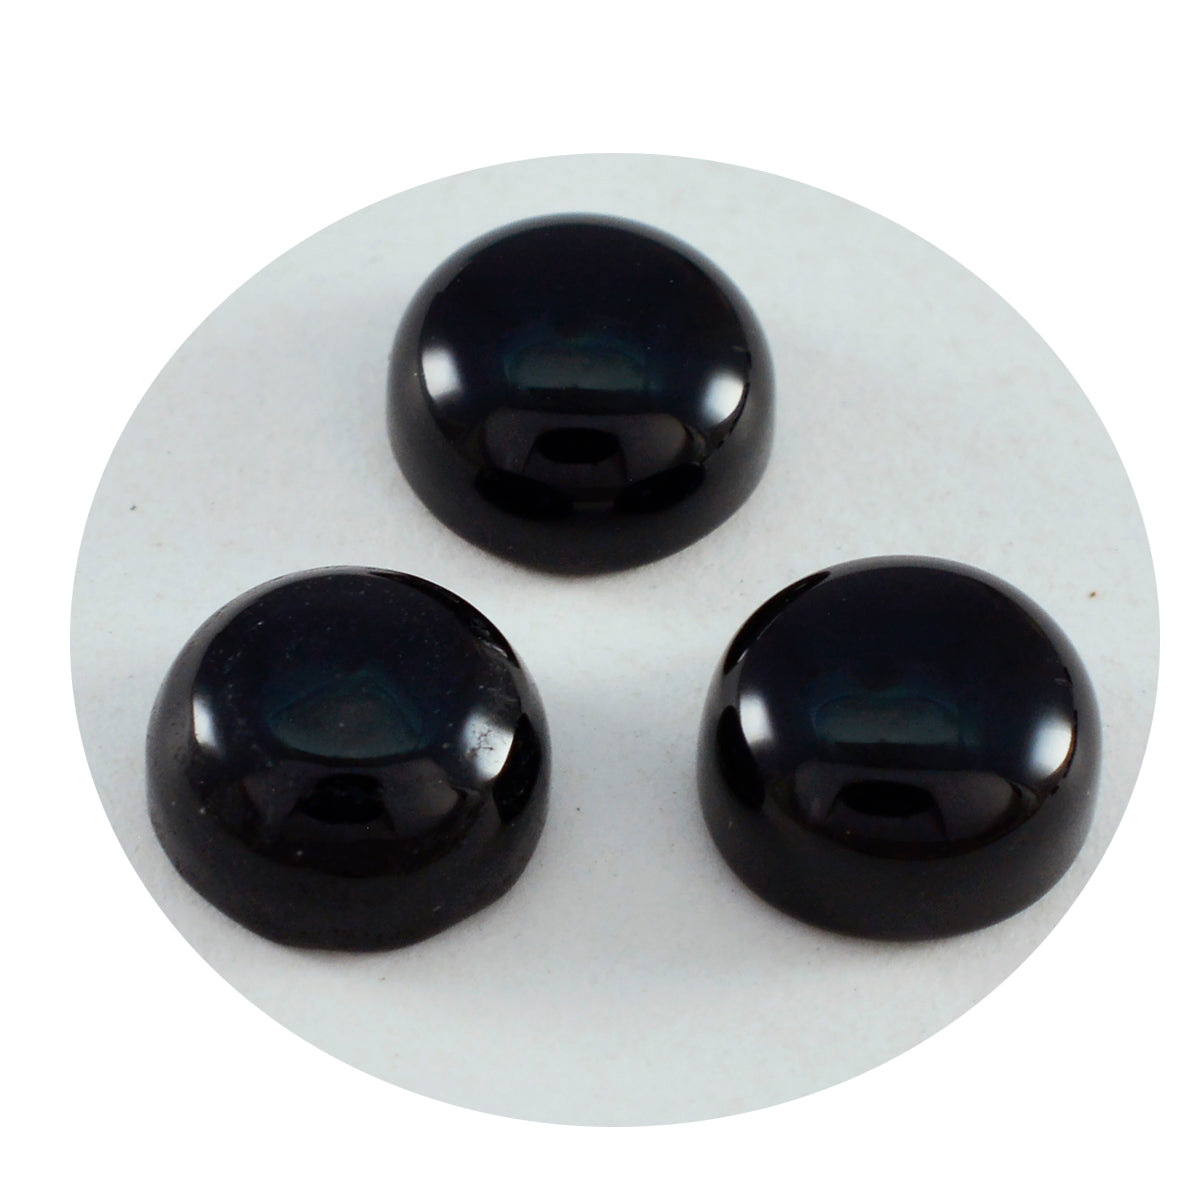 Riyogems 1 cabujón de ónix negro de 10 x 10 mm, forma redonda, piedra preciosa de calidad atractiva